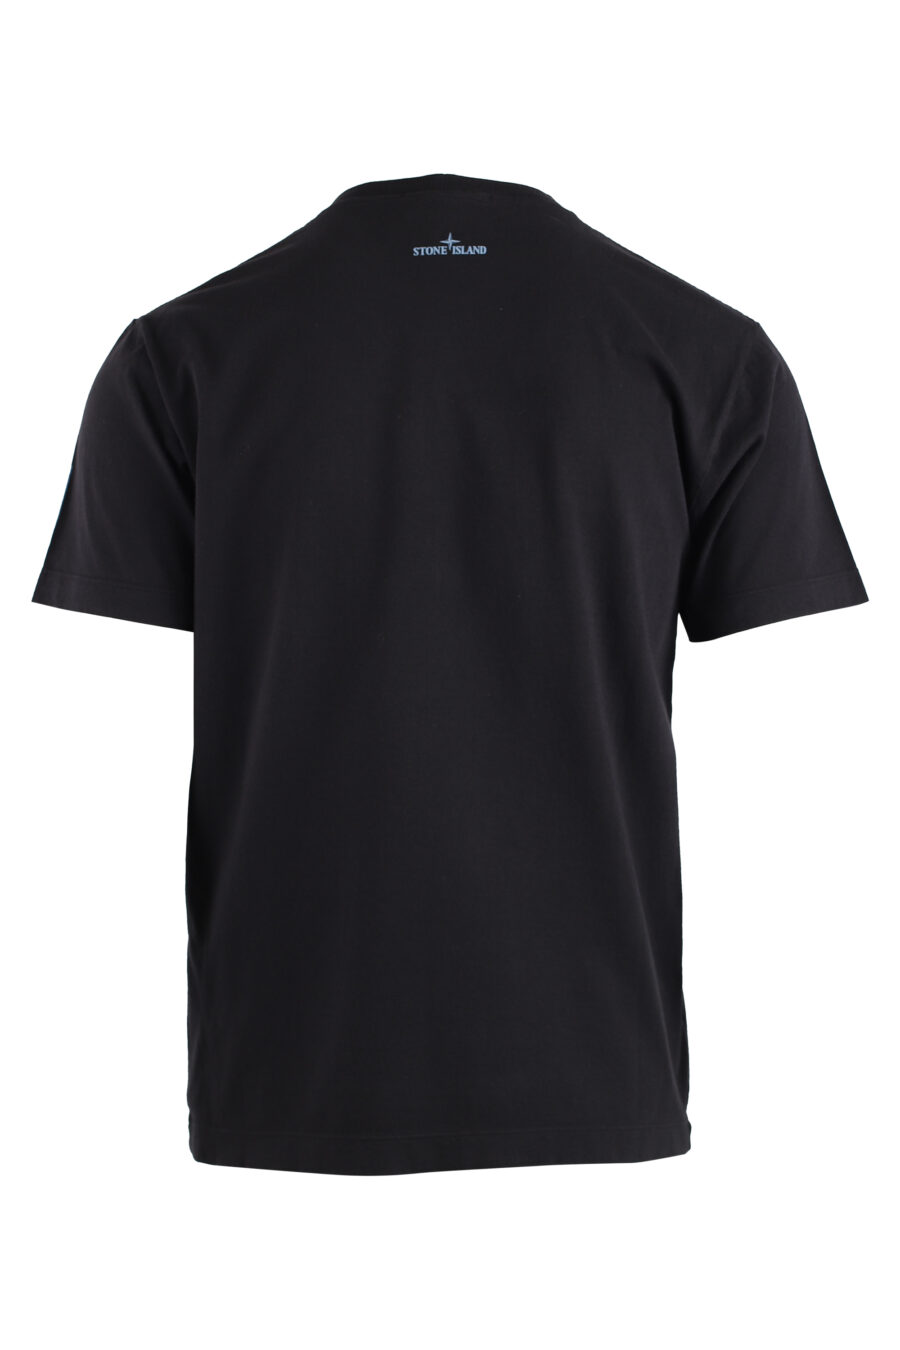 Camiseta negra con logo distorsionado blanco y azul - IMG 1409